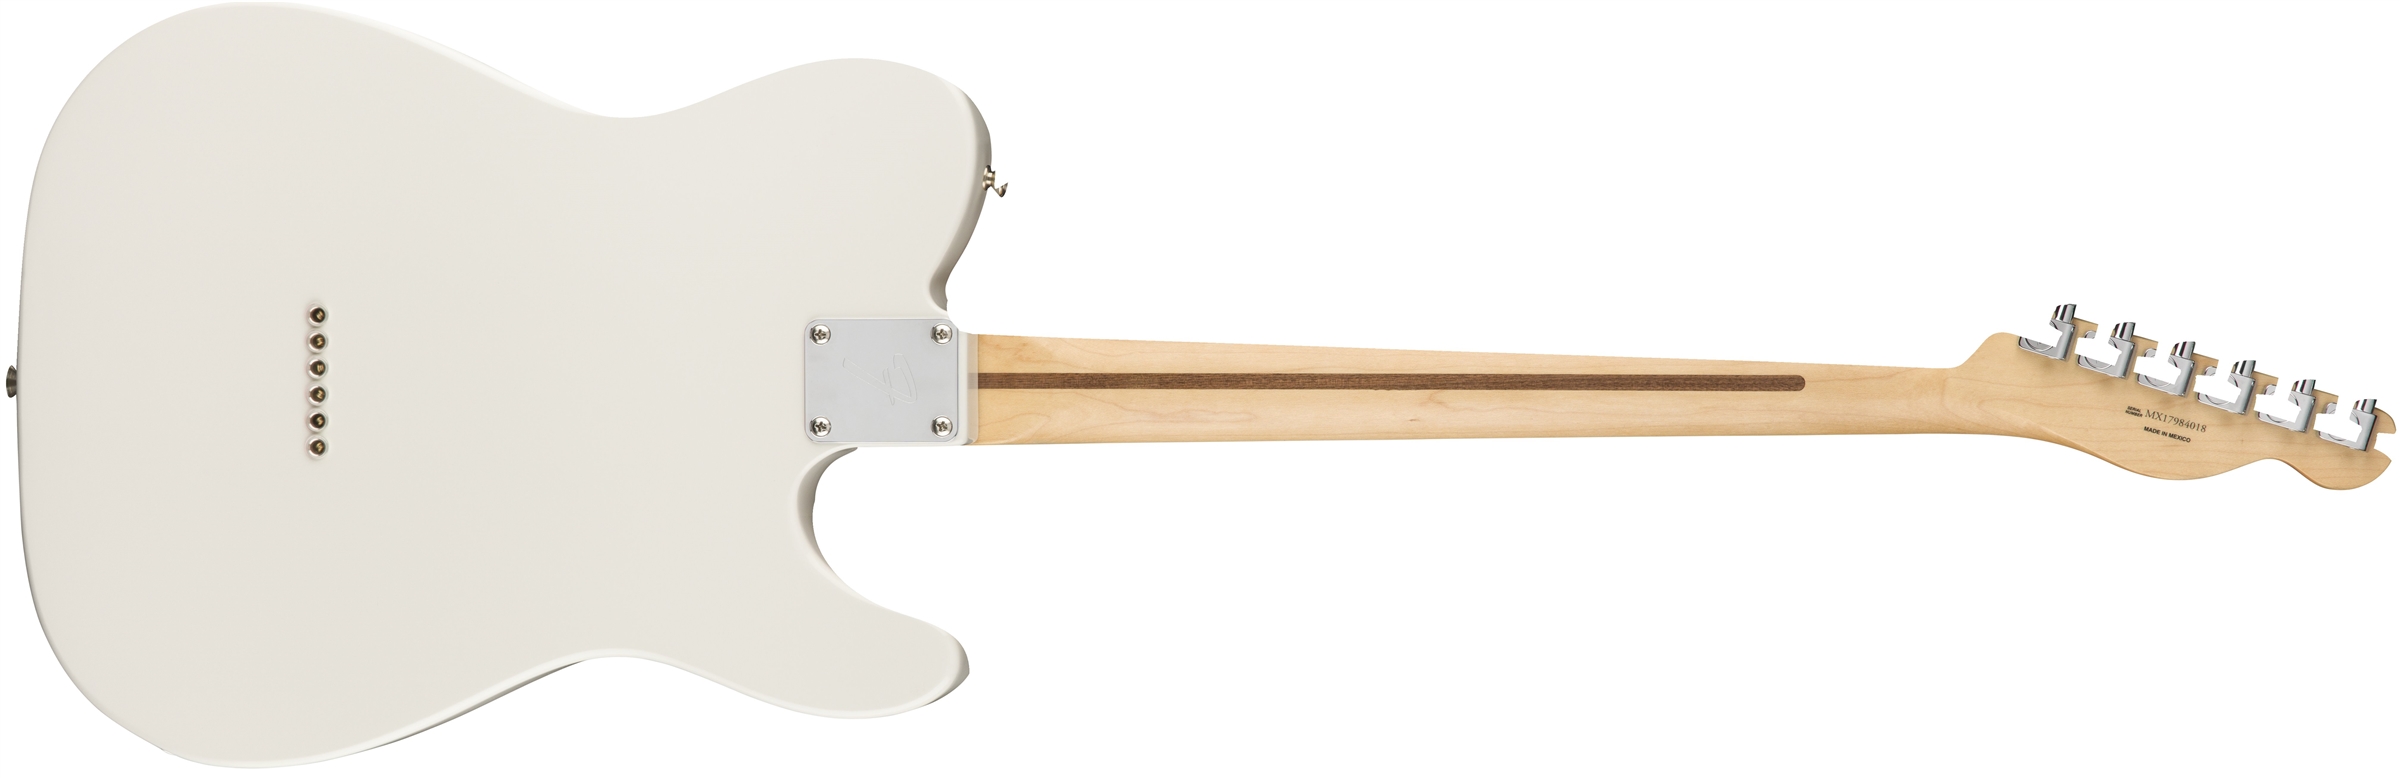 Fender Tele Player Lh Gaucher Mex Ss Pf - Polar White - Linkshandige elektrische gitaar - Variation 1